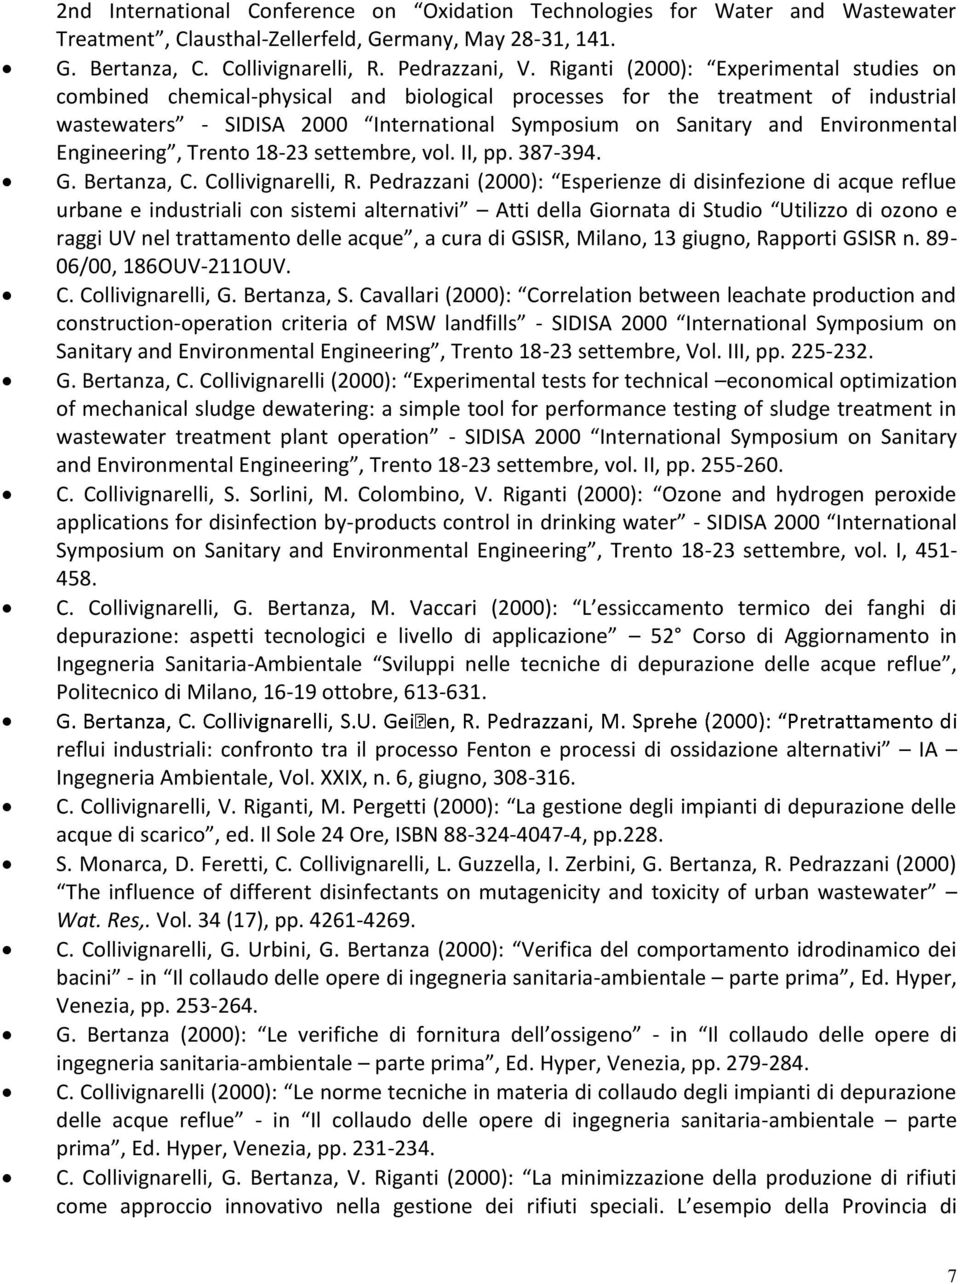 Environmental Engineering, Trento 18-23 settembre, vol. II, pp. 387-394. G. Bertanza, C. Collivignarelli, R.